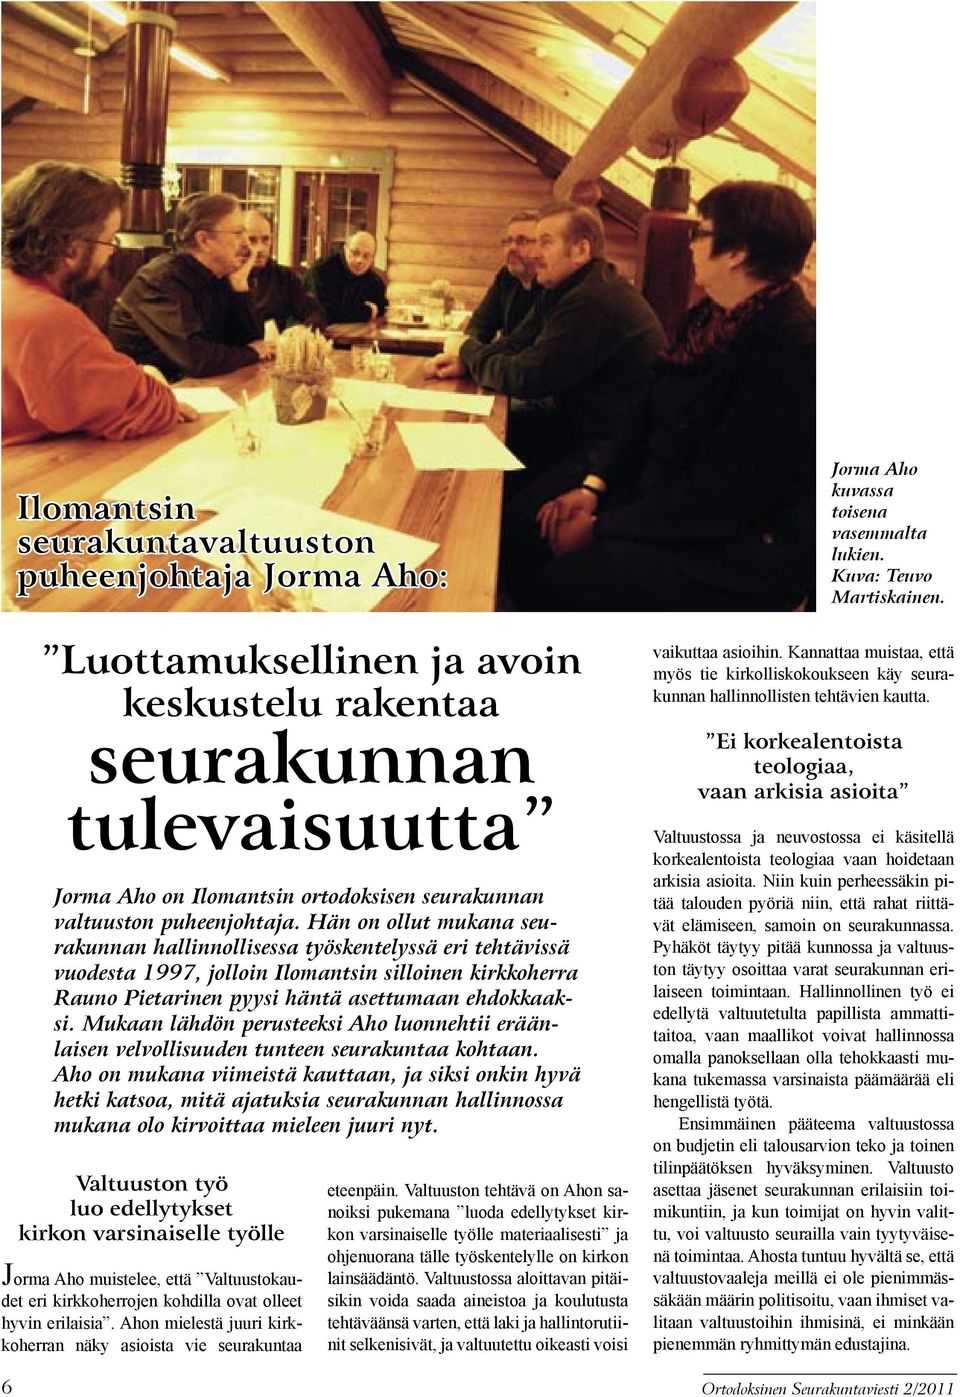 Hän on ollut mukana seurakunnan hallinnollisessa työskentelyssä eri tehtävissä vuodesta 1997, jolloin Ilomantsin silloinen kirkkoherra Rauno Pietarinen pyysi häntä asettumaan ehdokkaaksi.